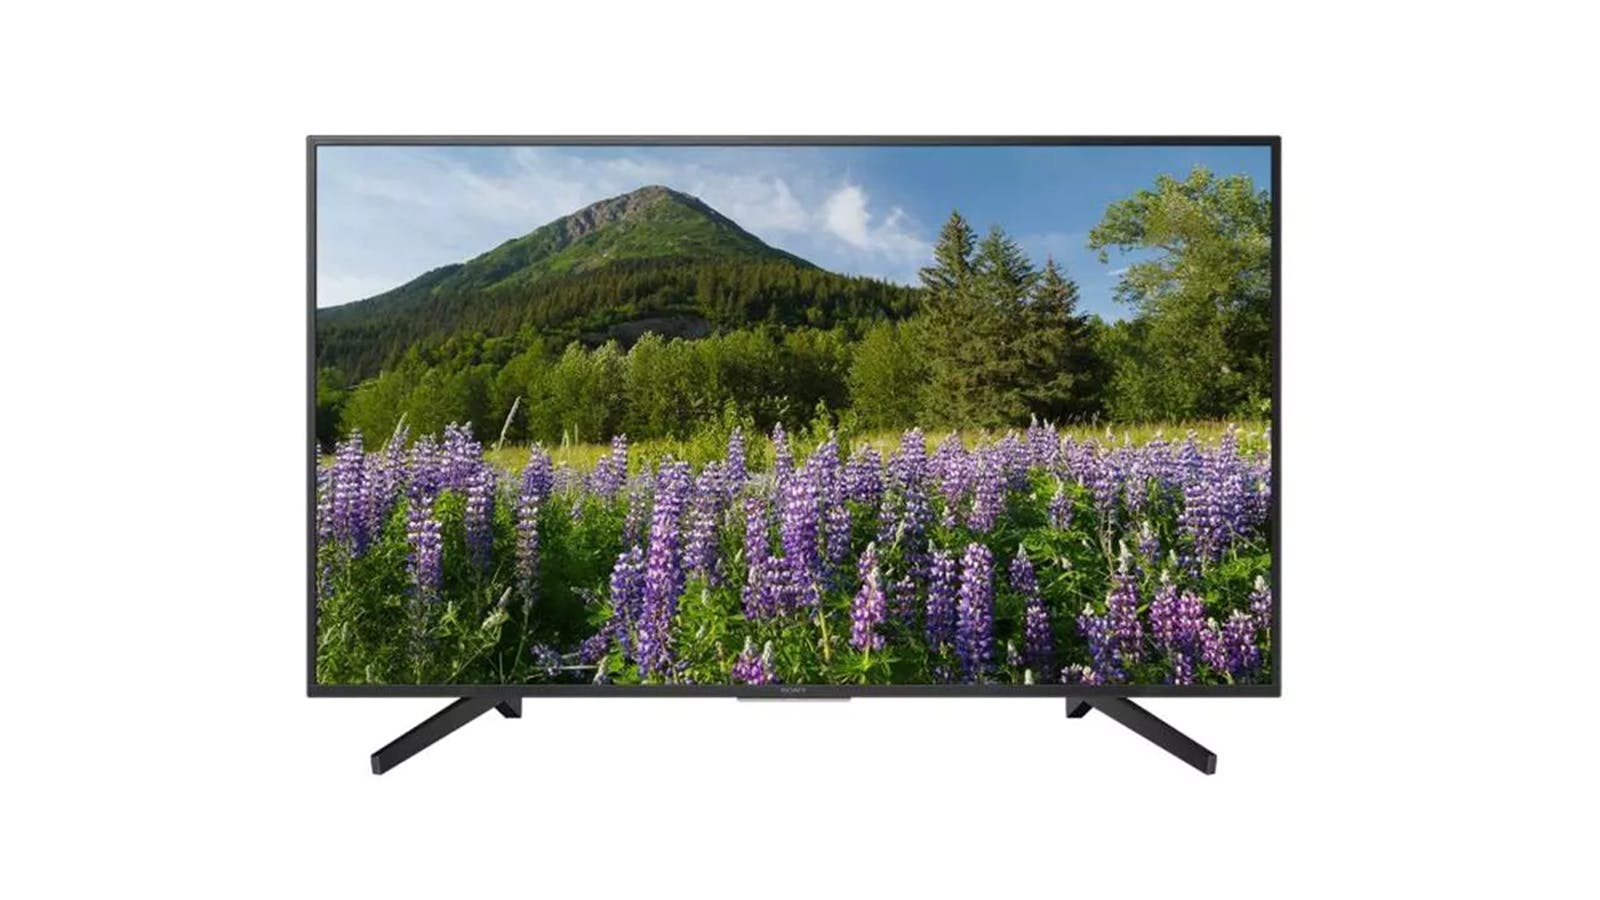 بررسی مشخصات، اخرین قیمت روز و خرید تلویزیون سونی مدل KD-55X7000F در بانه ویترین، جدیدترین اطلاعات تلویزیون سونی KD-55X7000F، مشخصات و عکس‌ها